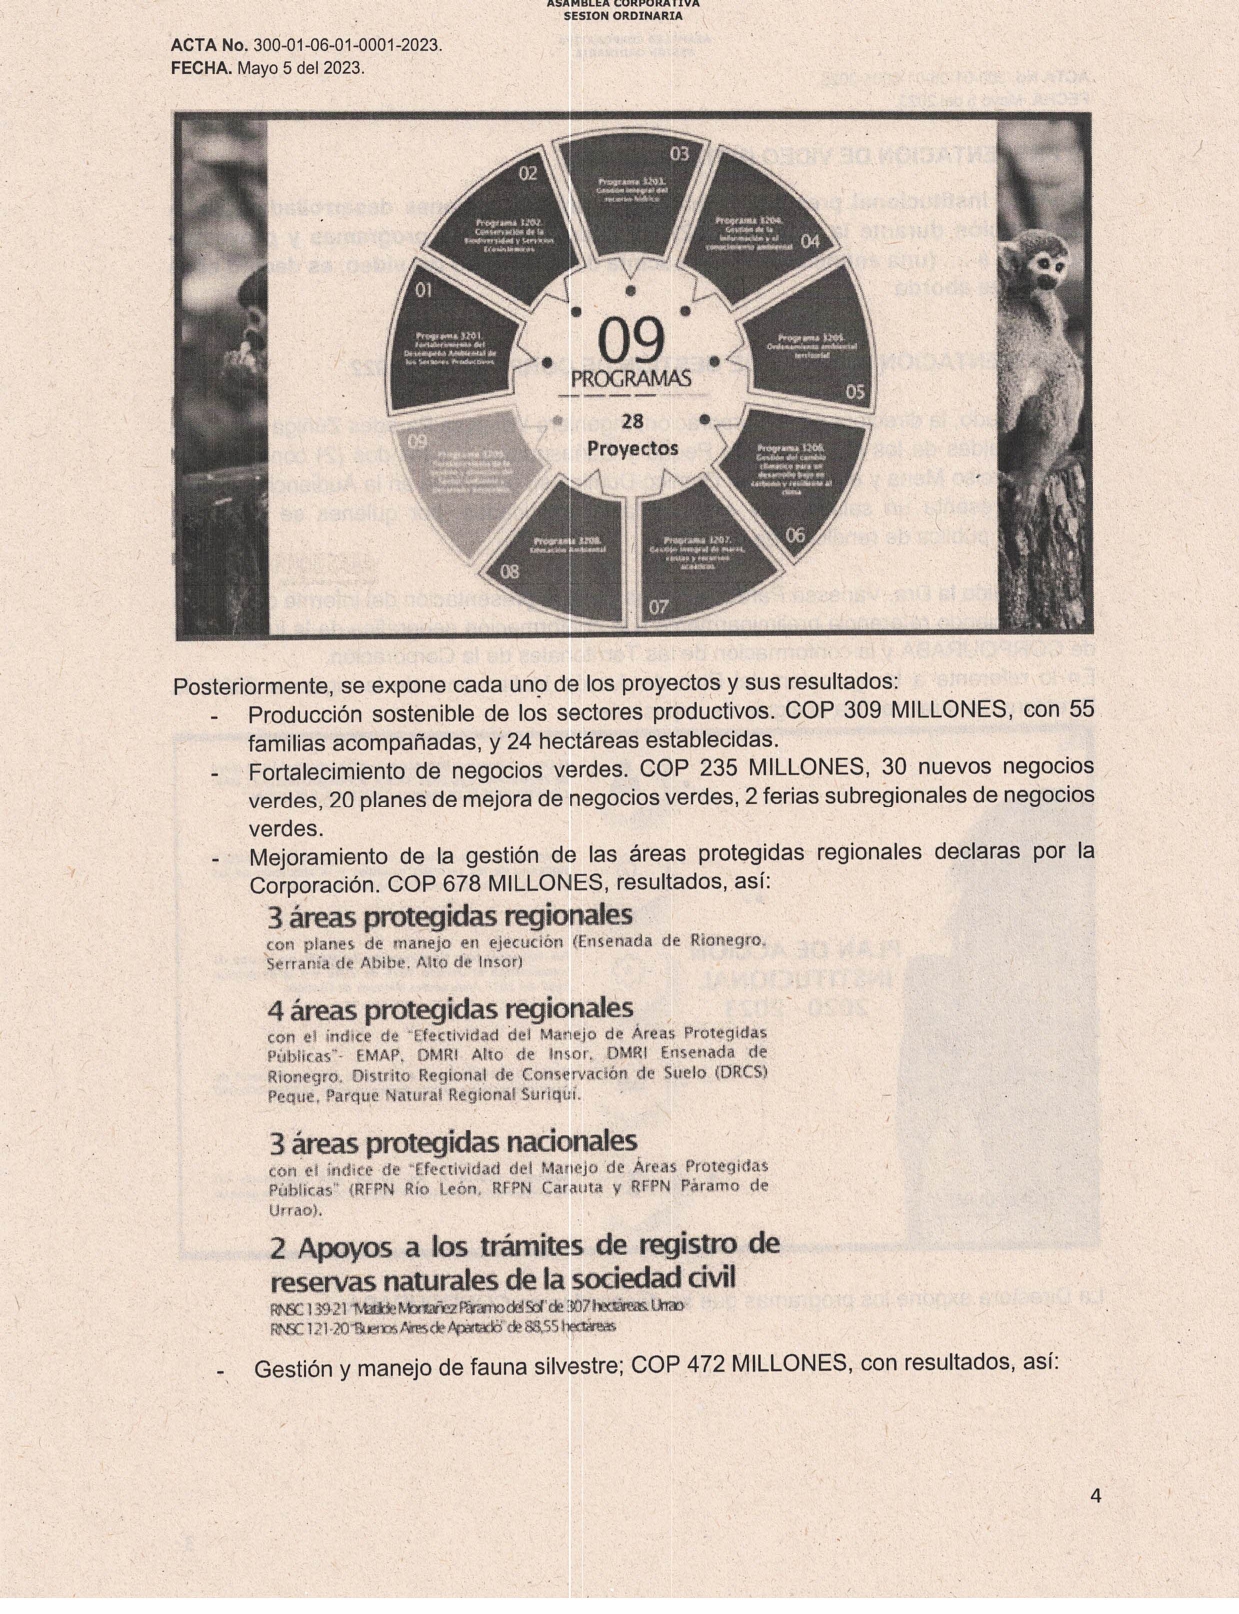 ACTA-0001-RENDICION-CUENTAS-2022_page-0004